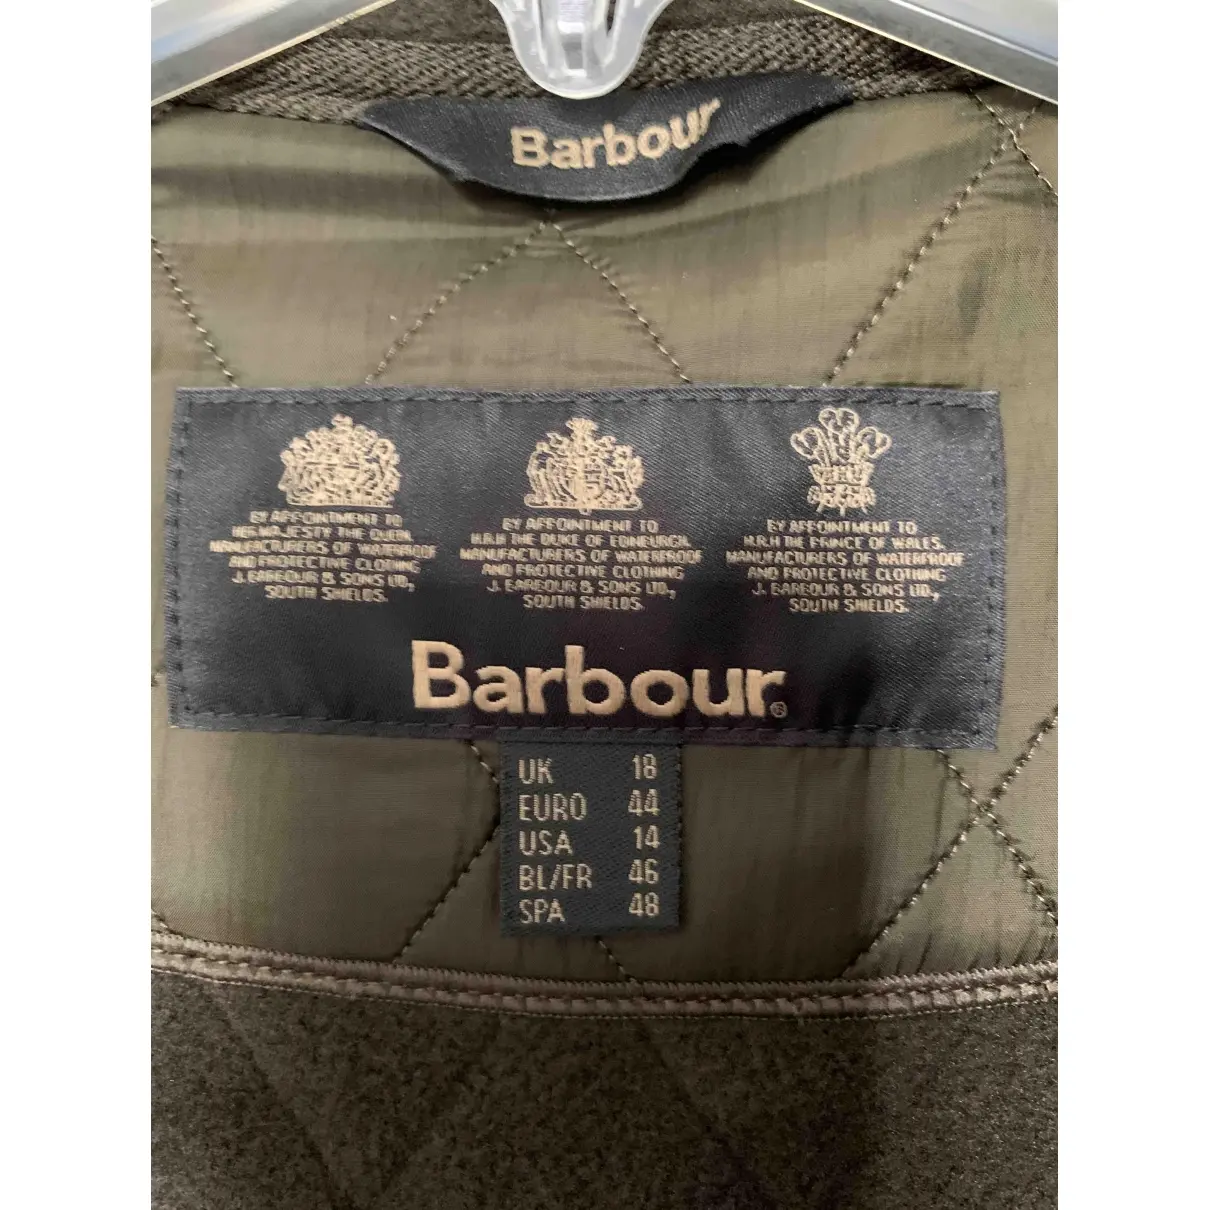 Buy Barbour Jacket online